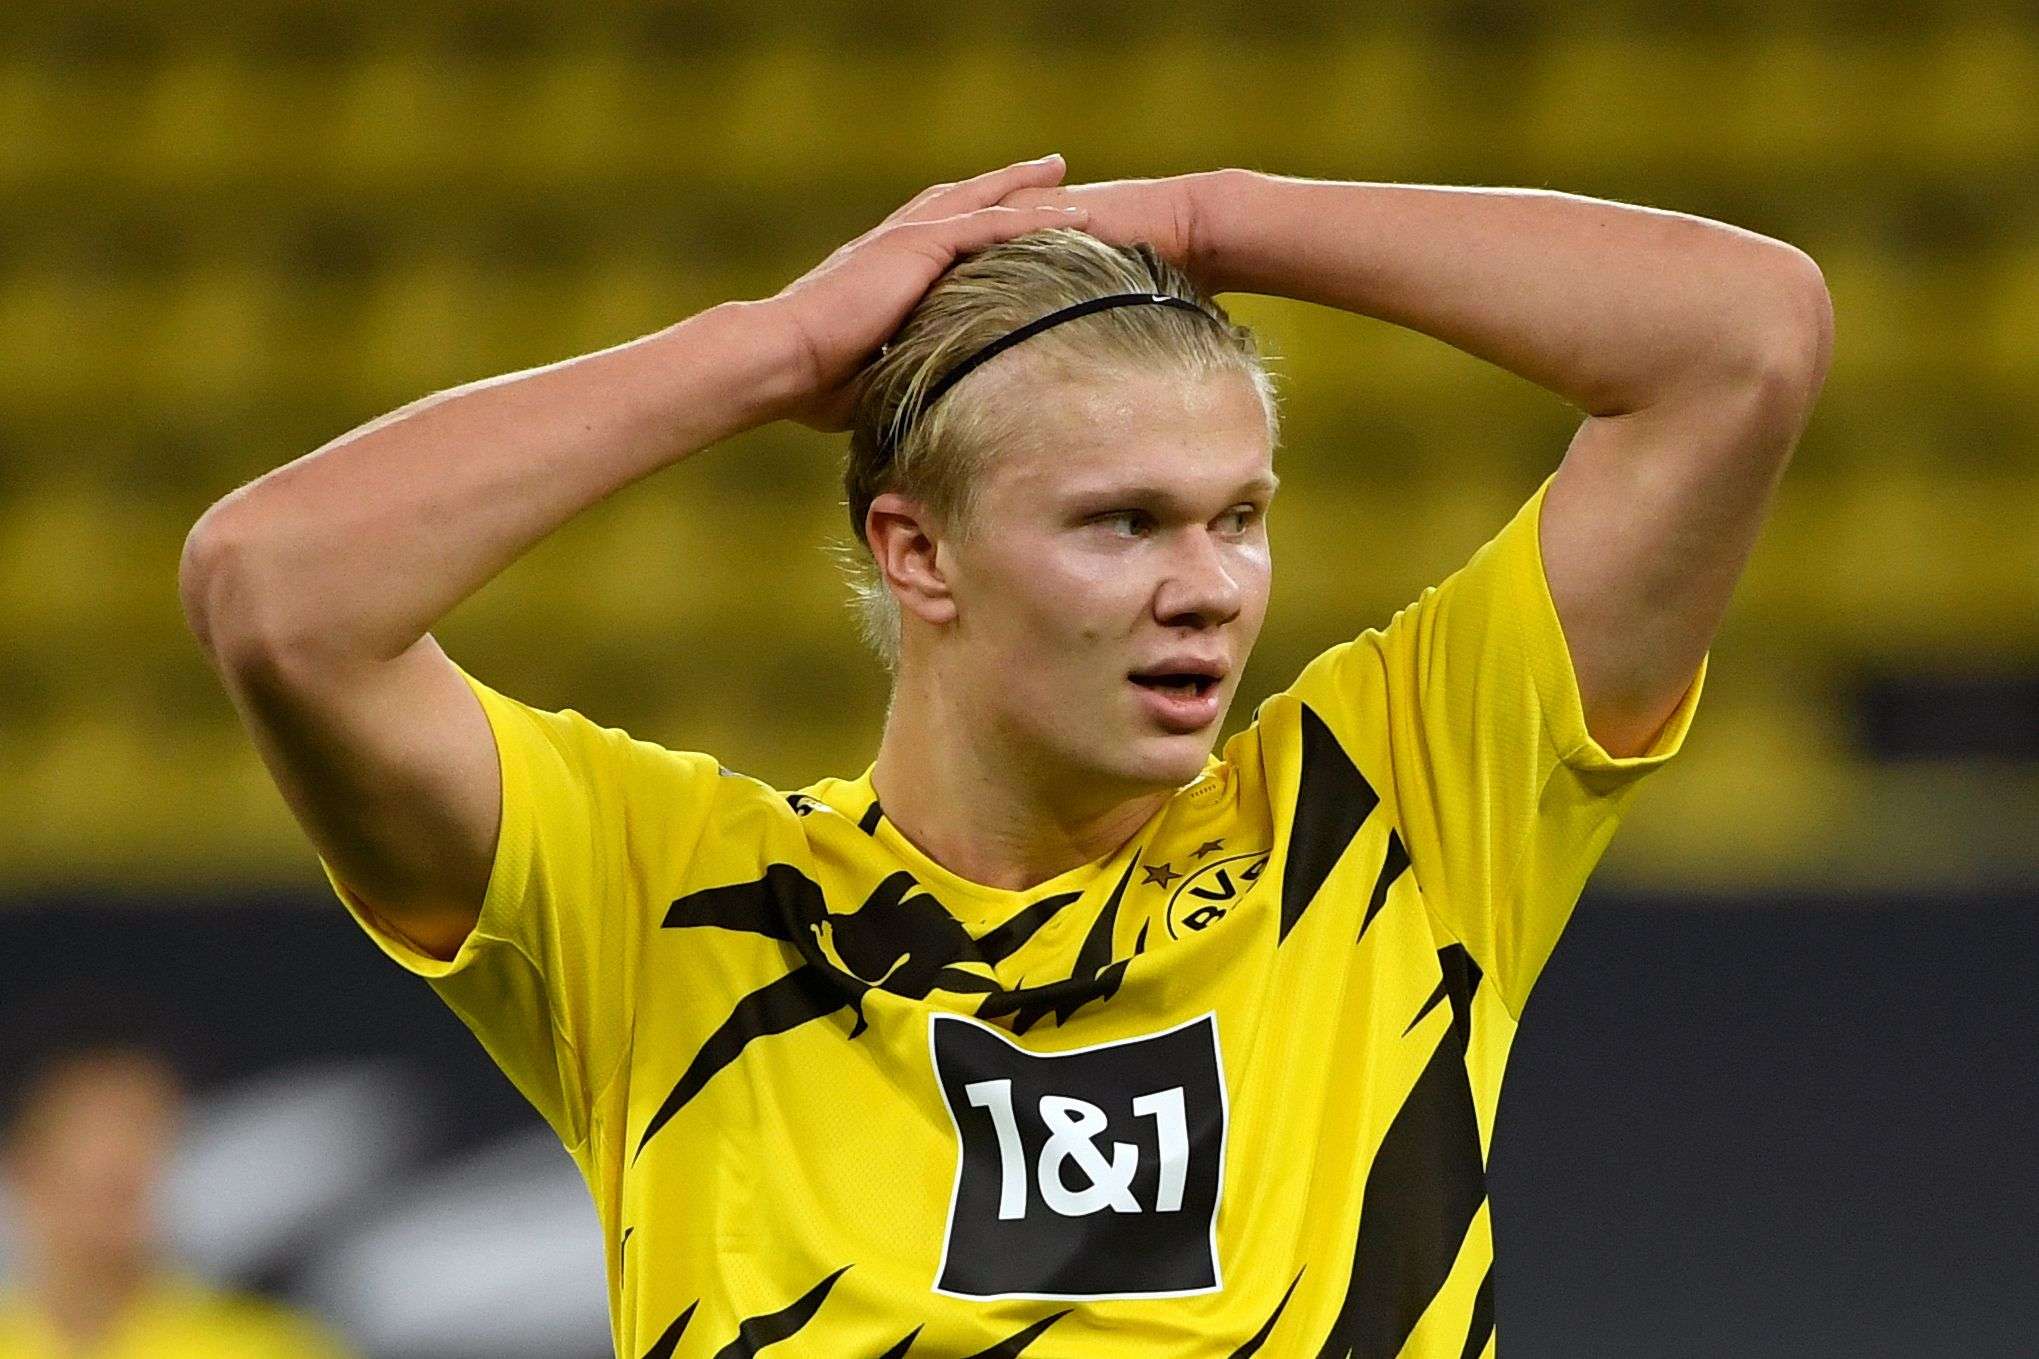 النجم النروجي البالغ من العمر 20 عاما يسجل 17 هدفا في 13 مباراة في الموسم